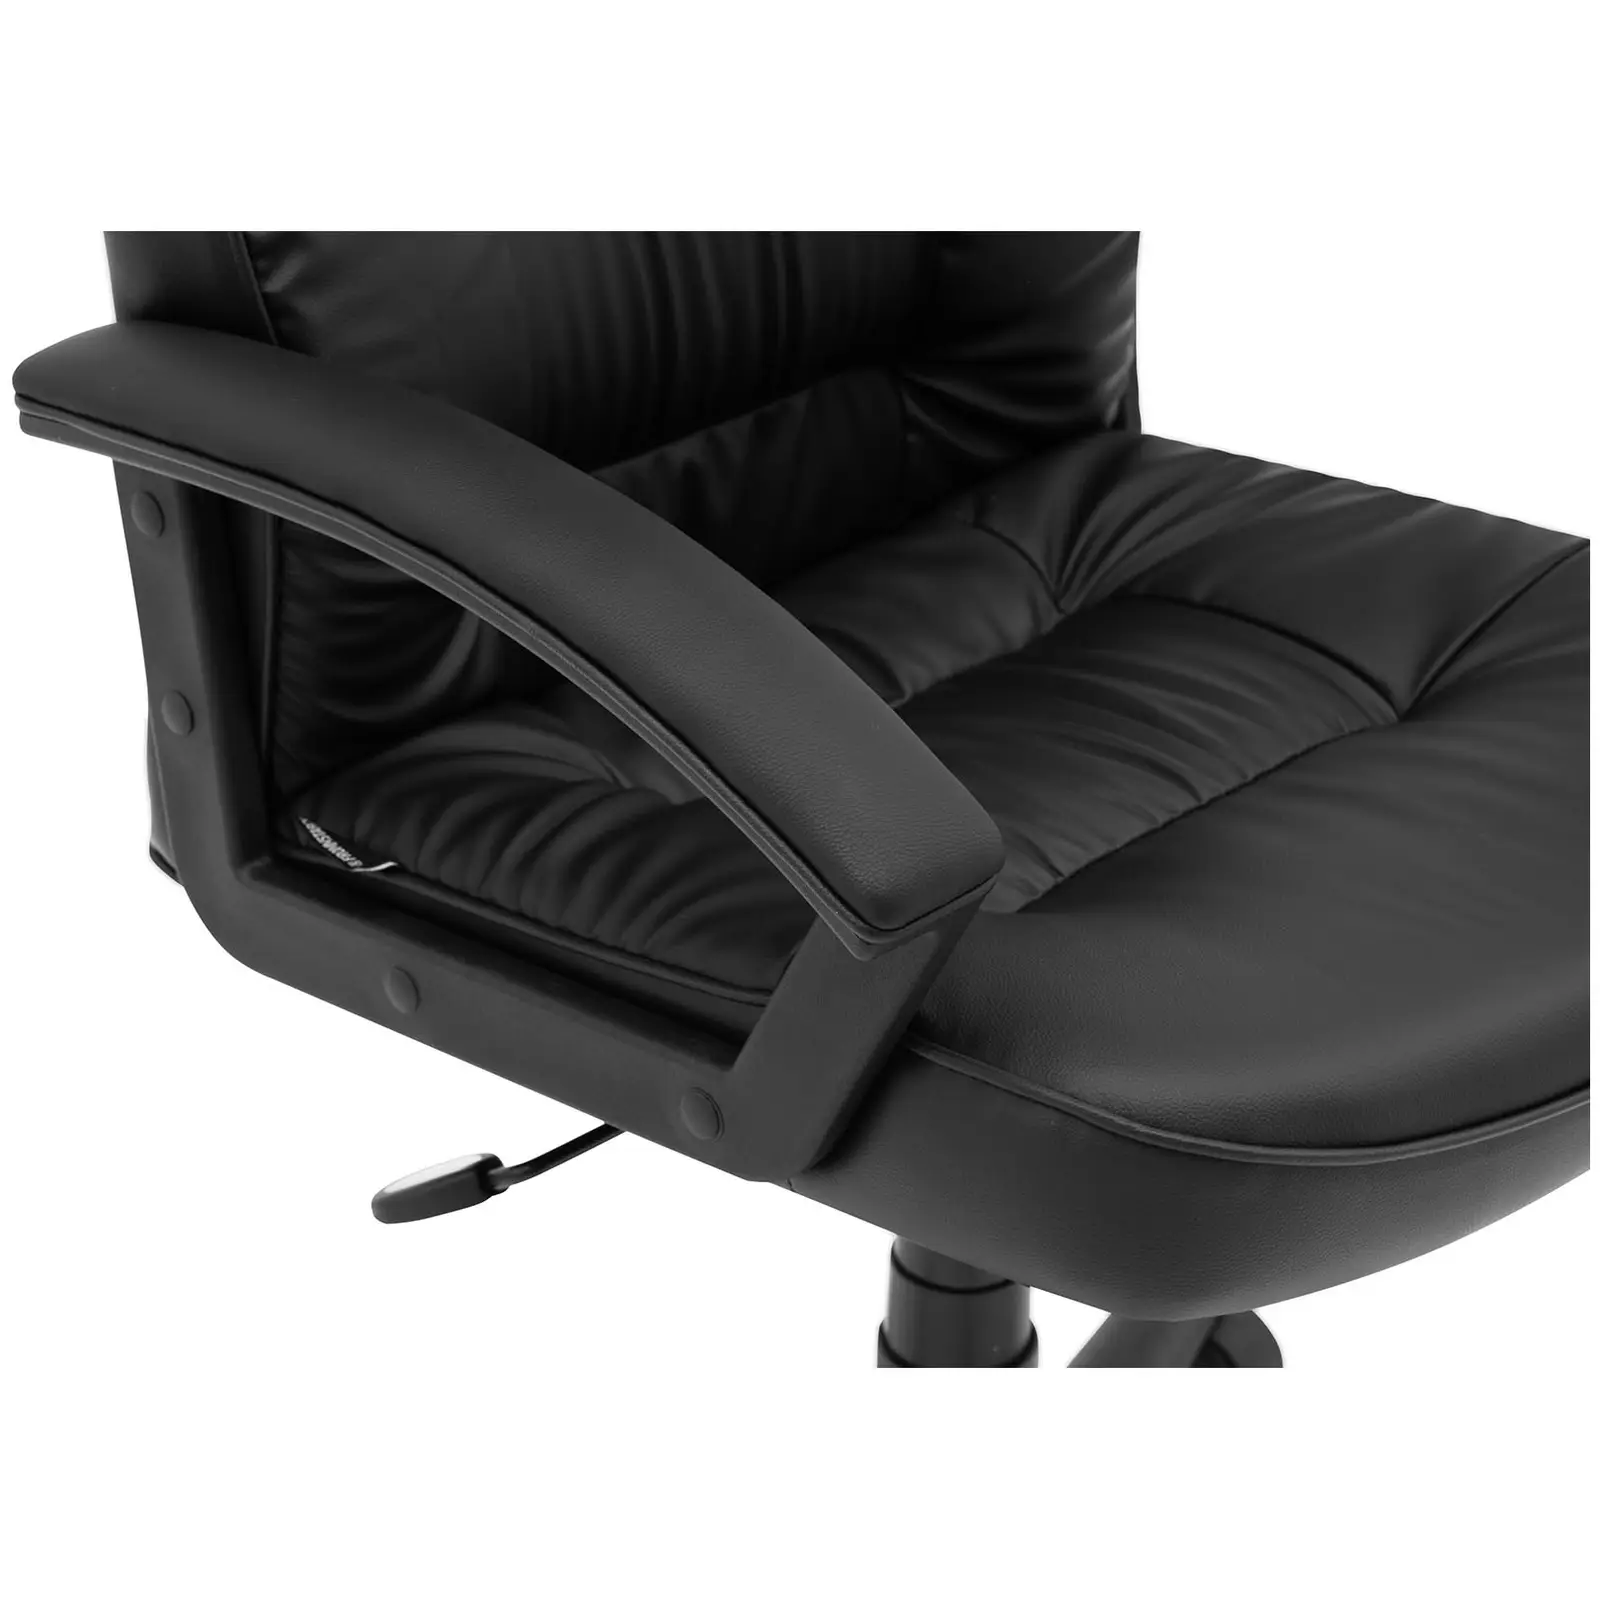 Kancelárska stolička - sieťované operadlo - 100 kg - čierna